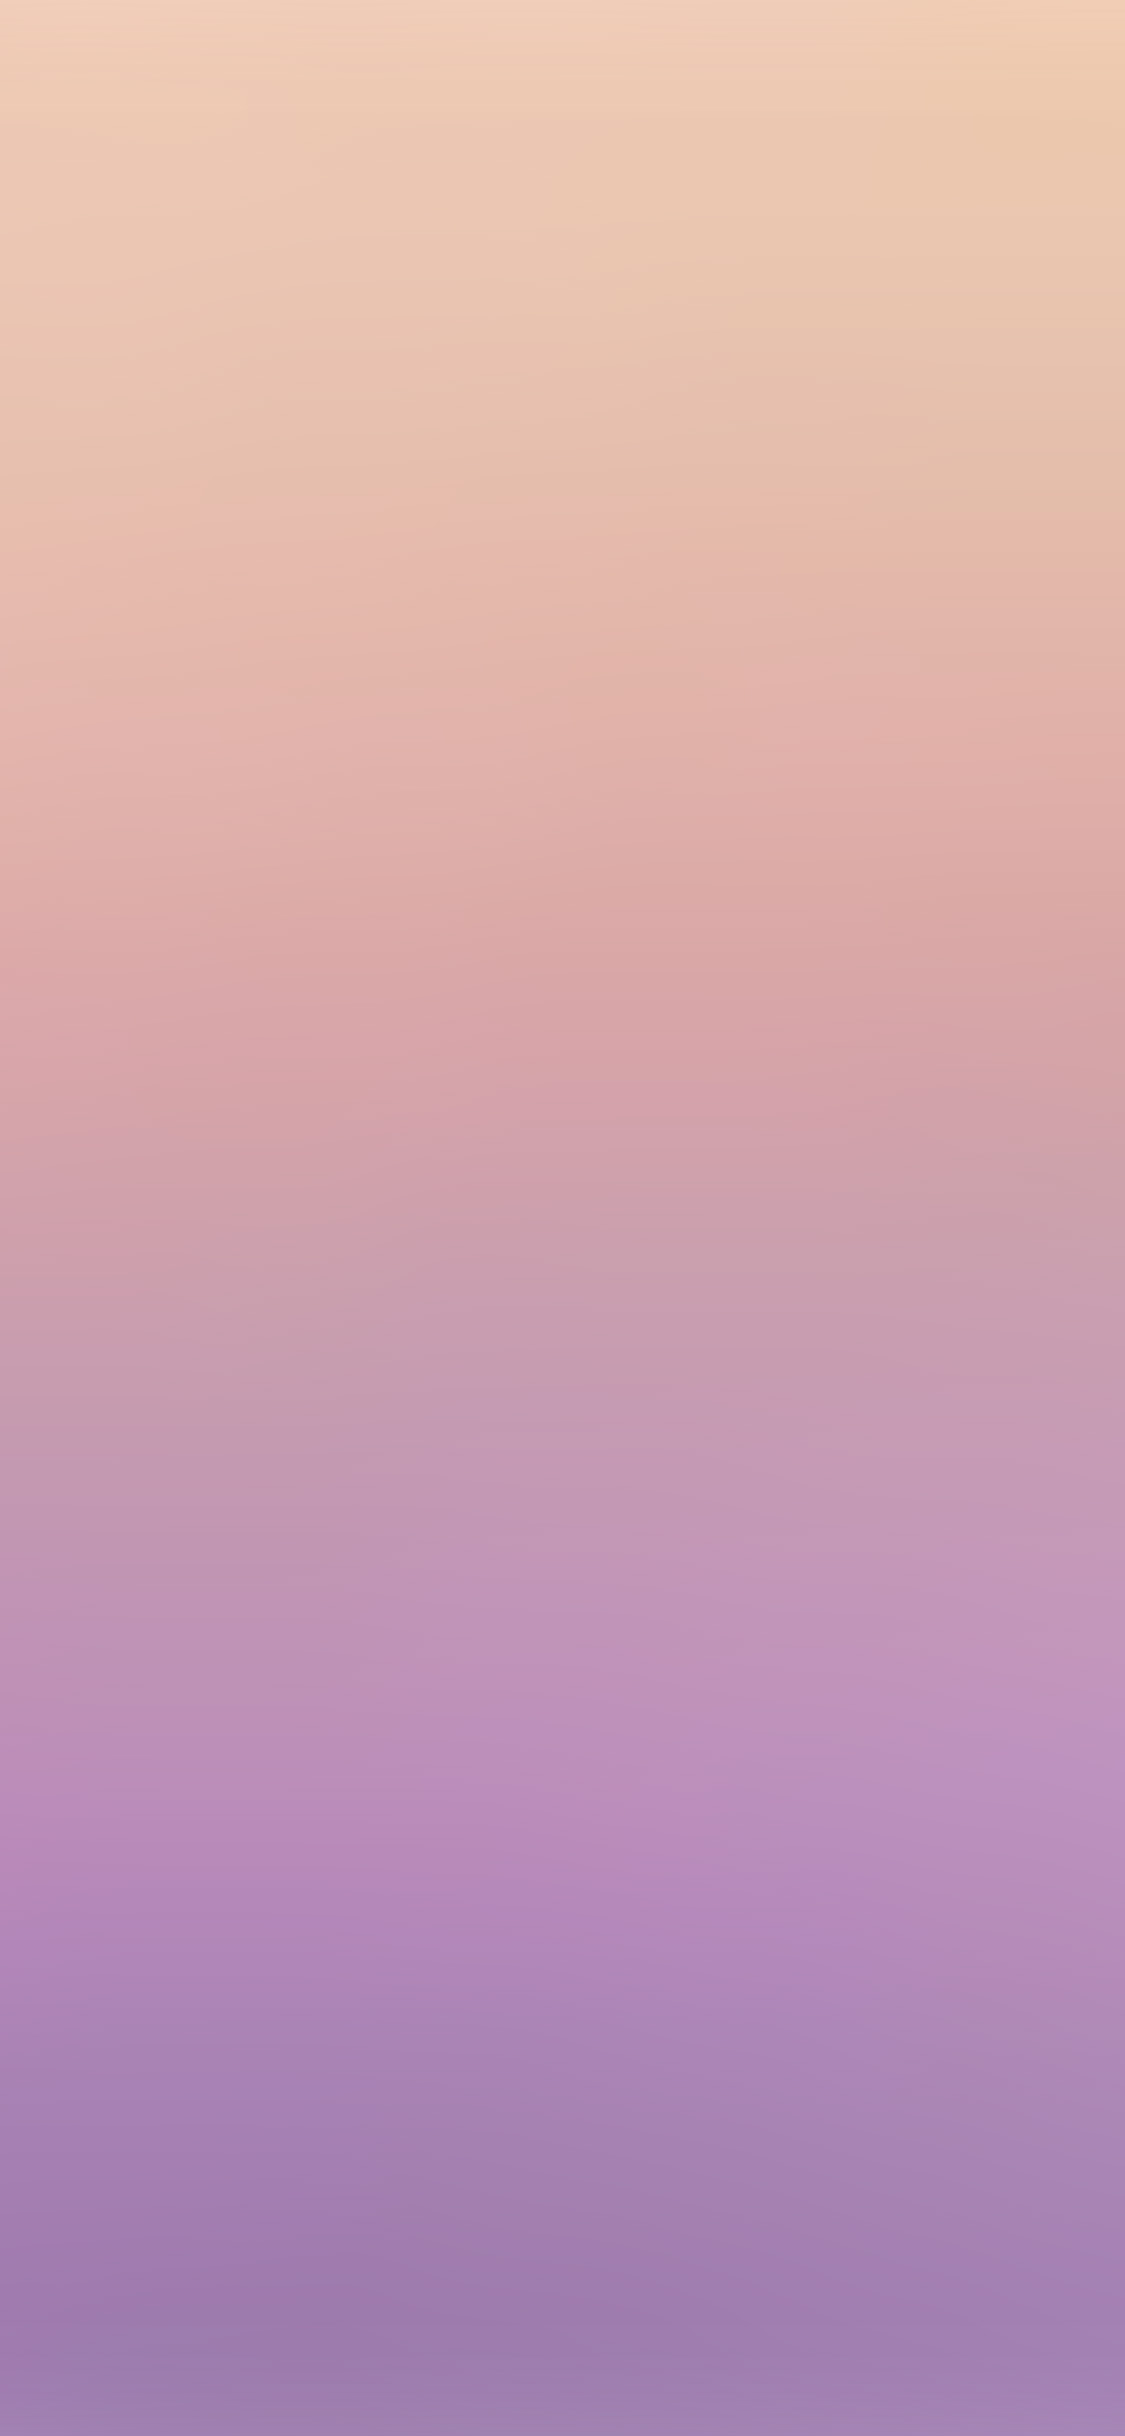 1125x2436 | iPhone11 wallpaper | sl84-pastel-pink-purpleblur-gradati